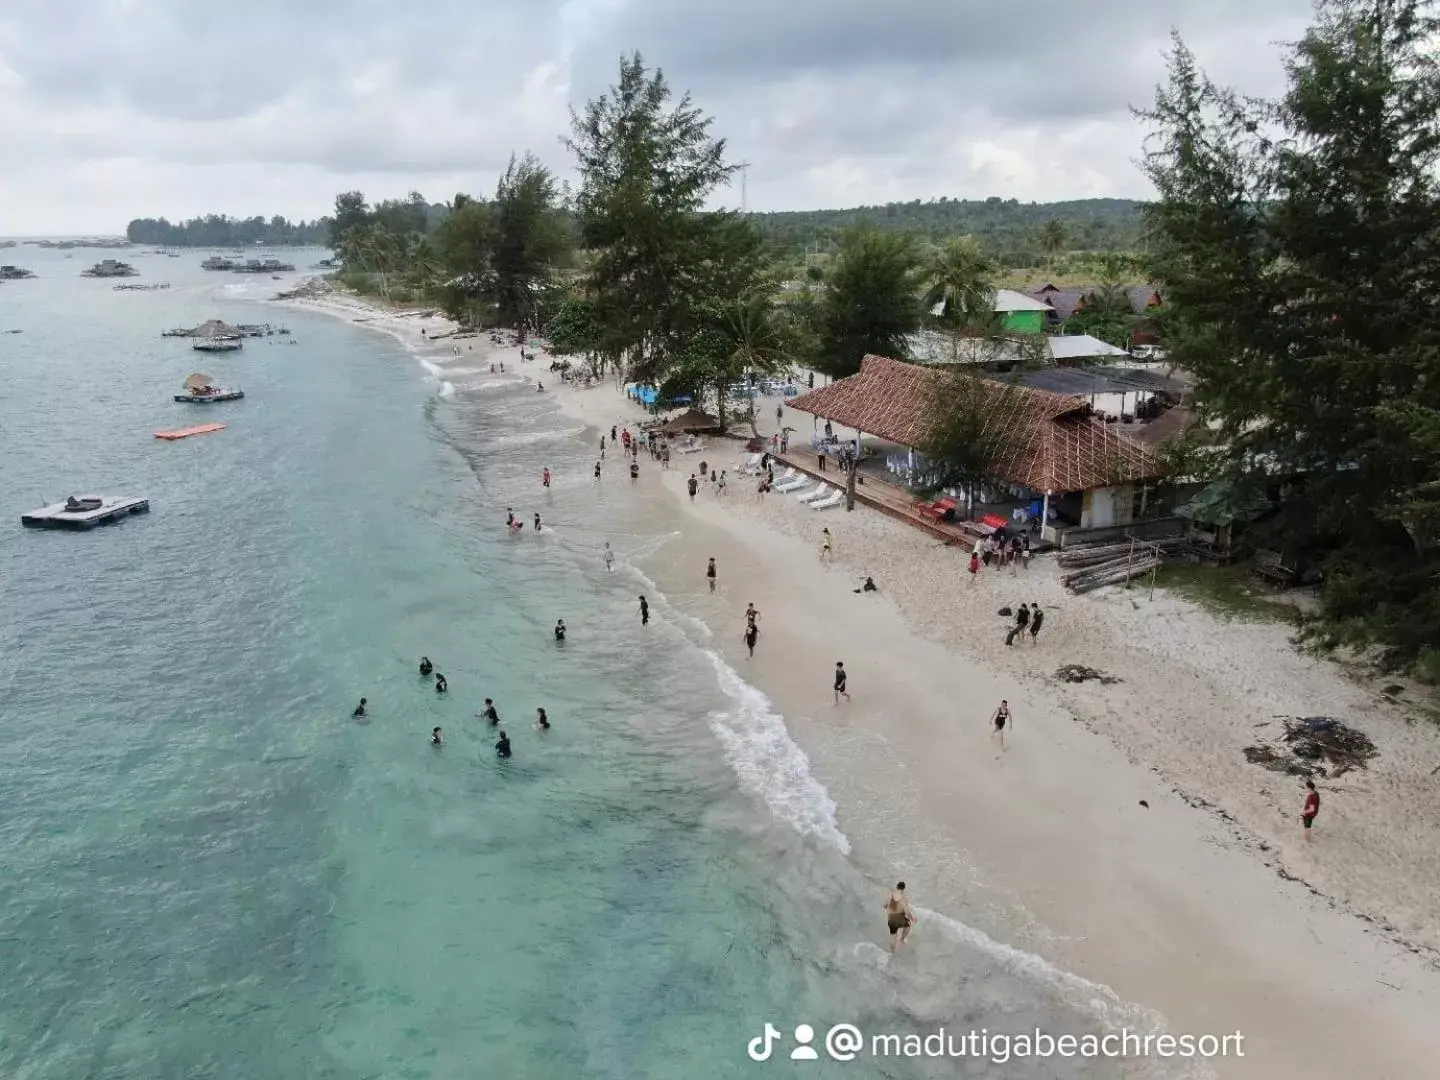 Beach in Madu Tiga Beach & Resort